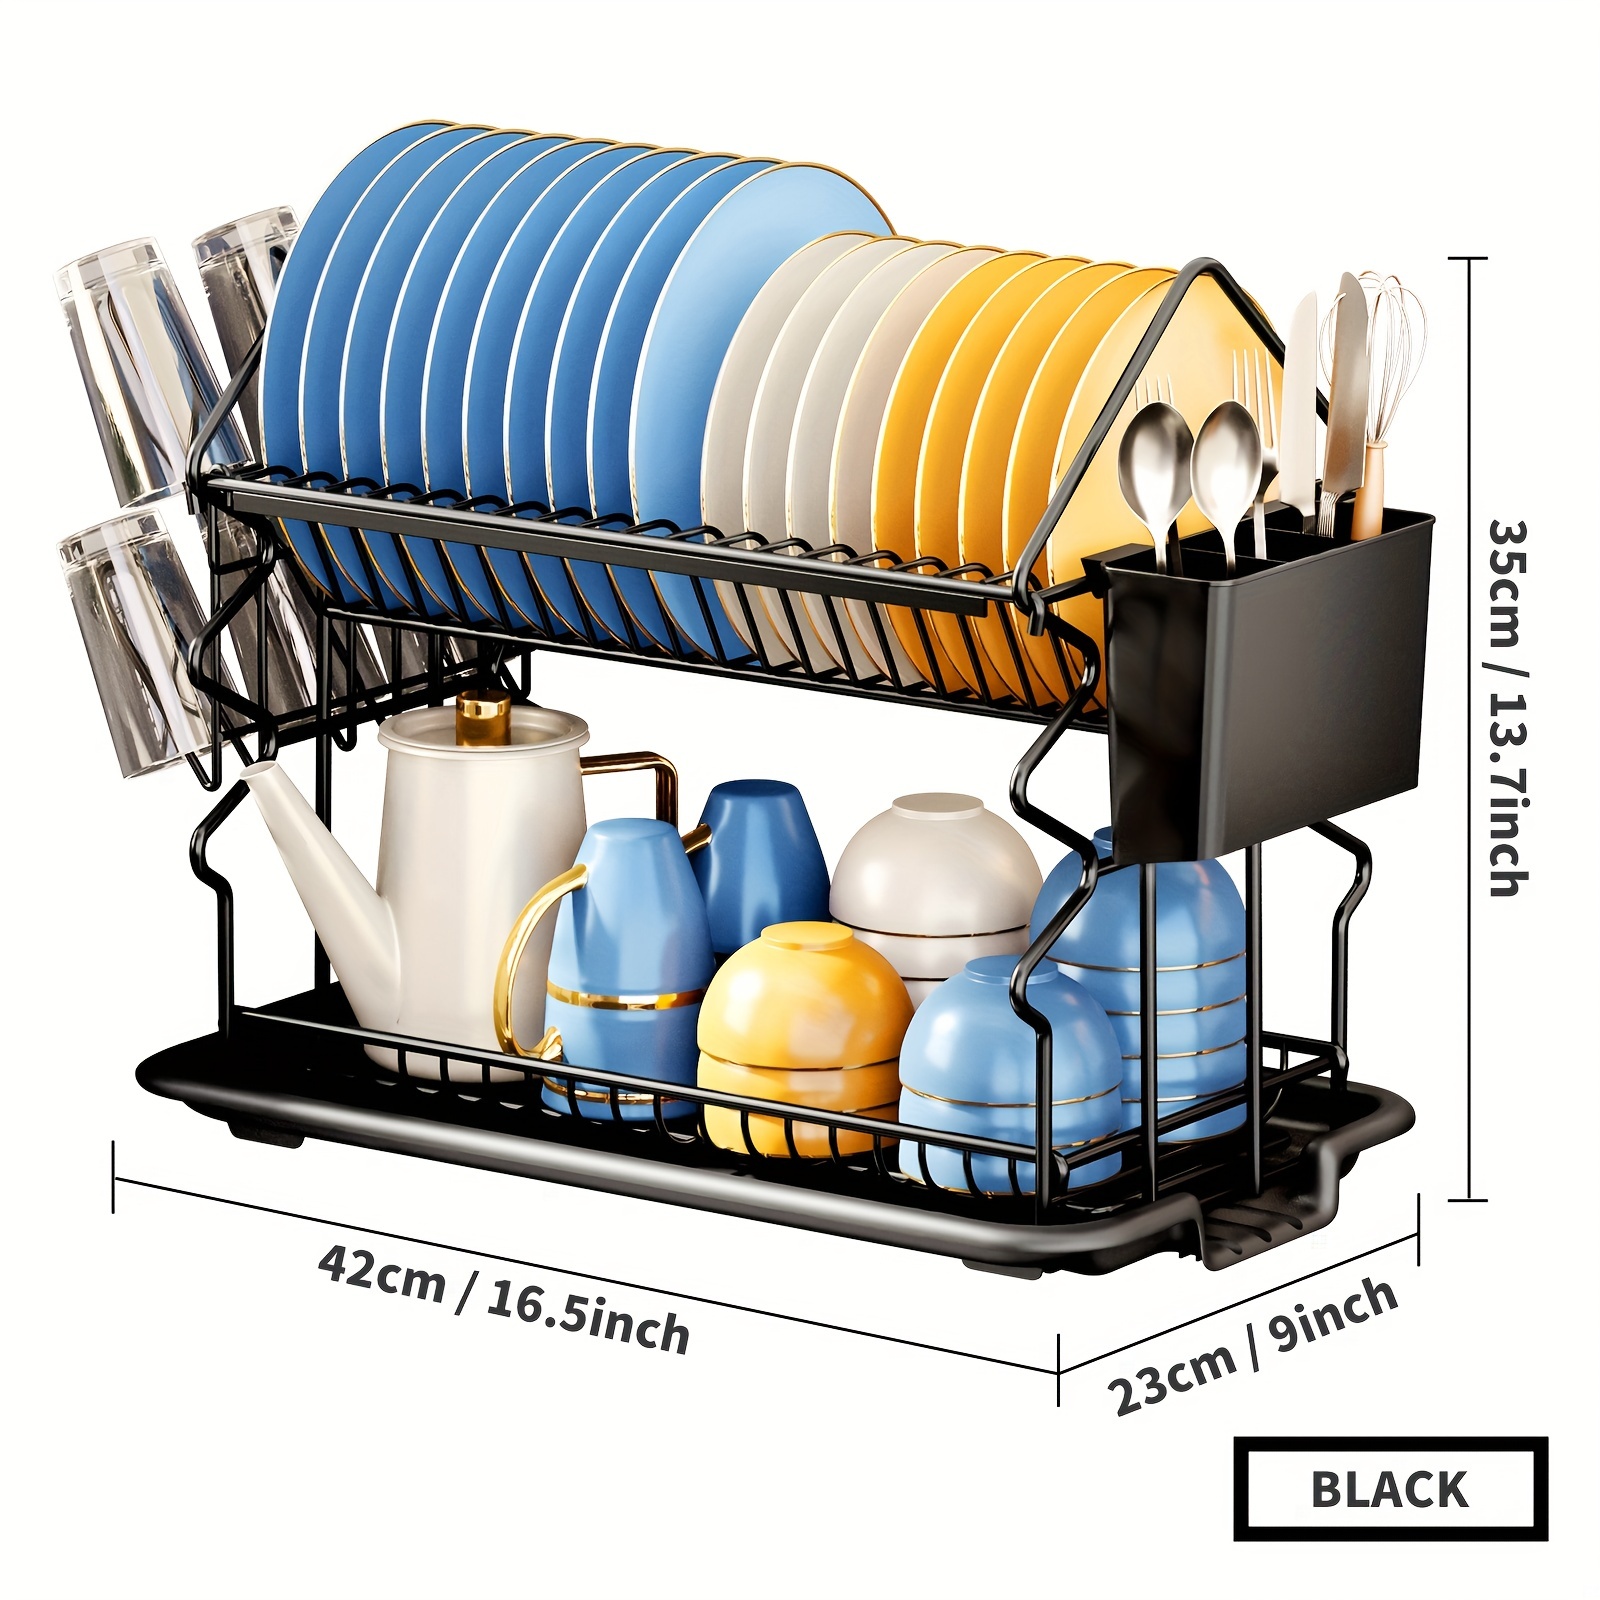 2 Tier Plastic Dish Drainer, Black, KITCHEN ORGANIZATION